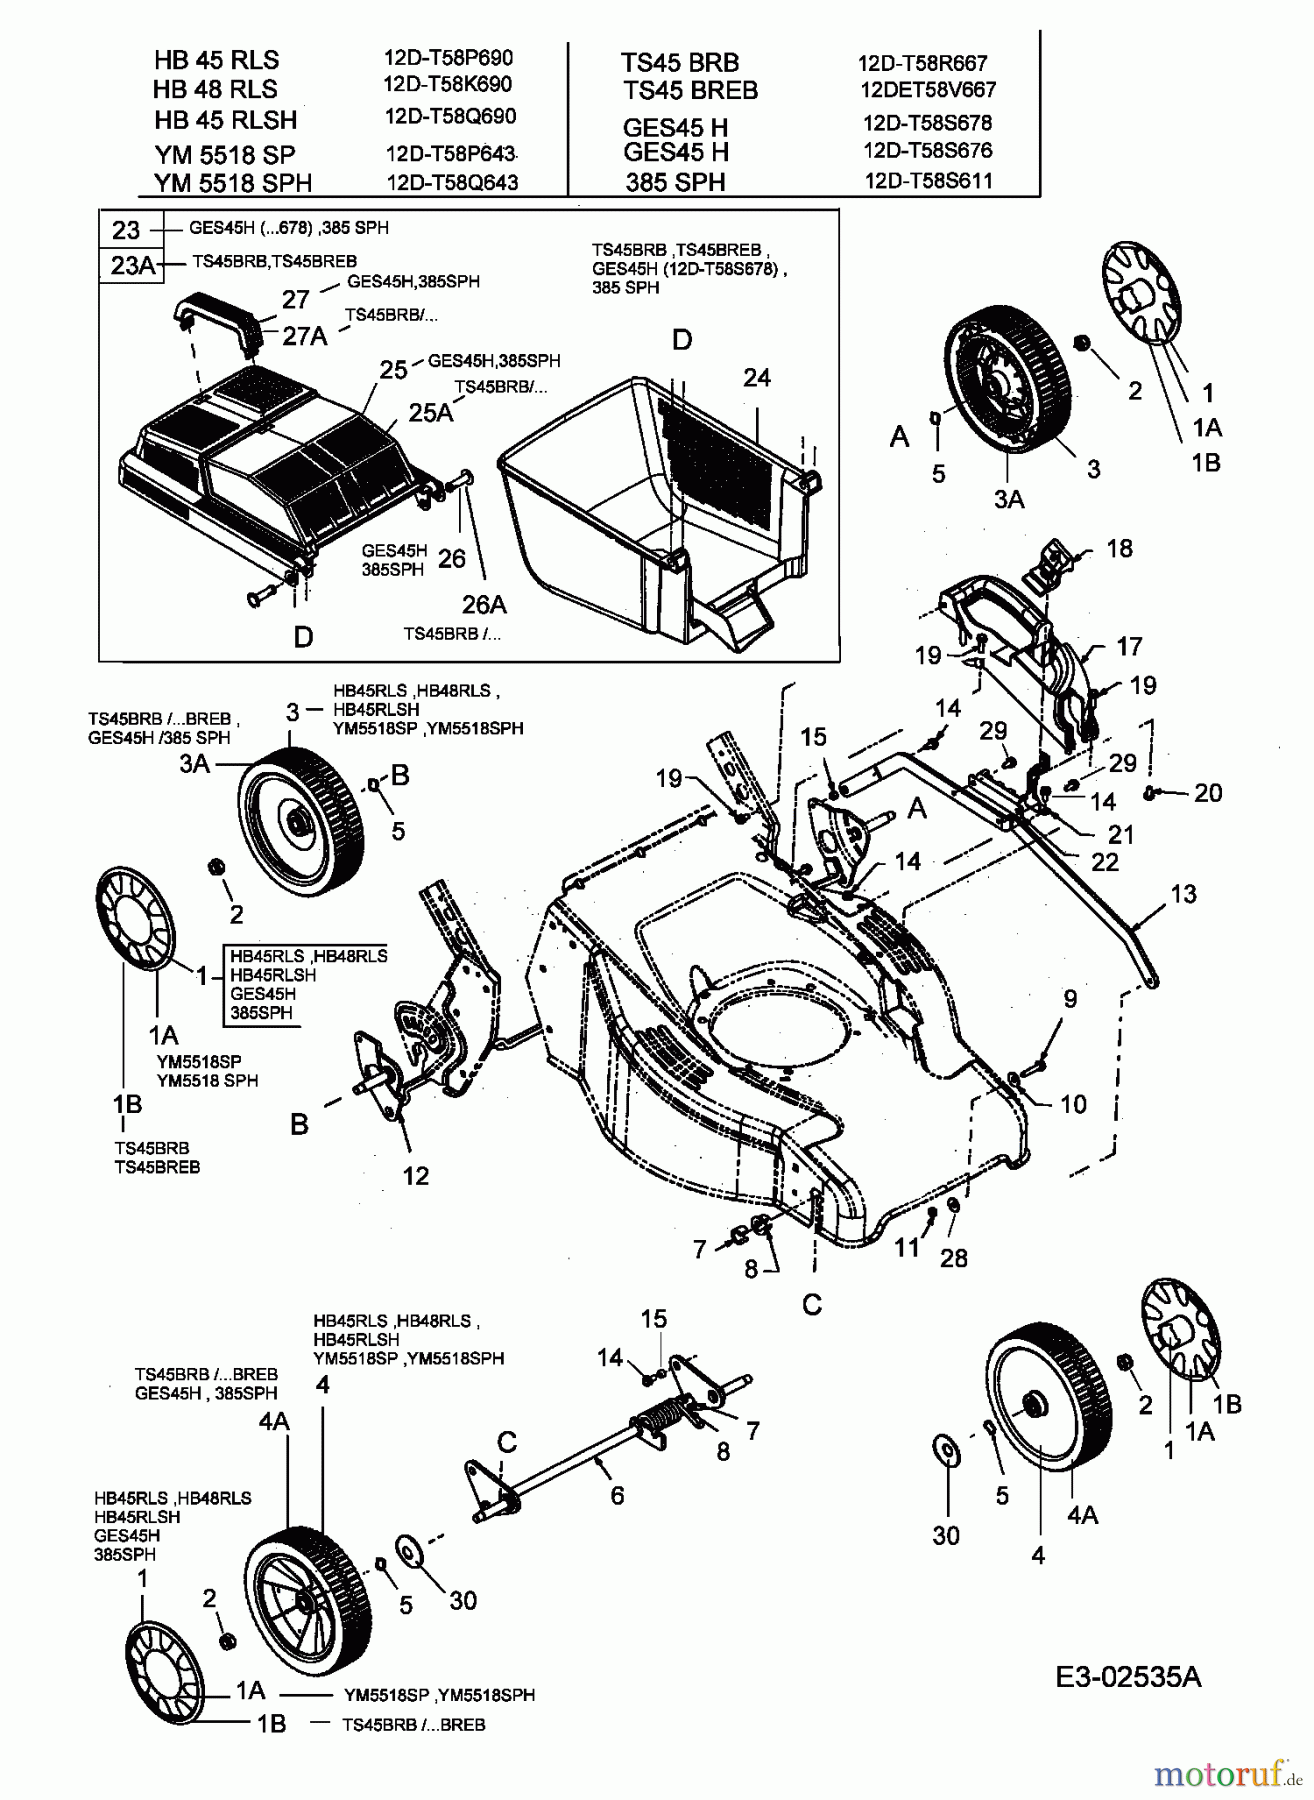  Lawnflite Motormäher mit Antrieb 385 SPH 12D-T58S611  (2005) Grasfangkorb, Räder, Schnitthöhenverstellung